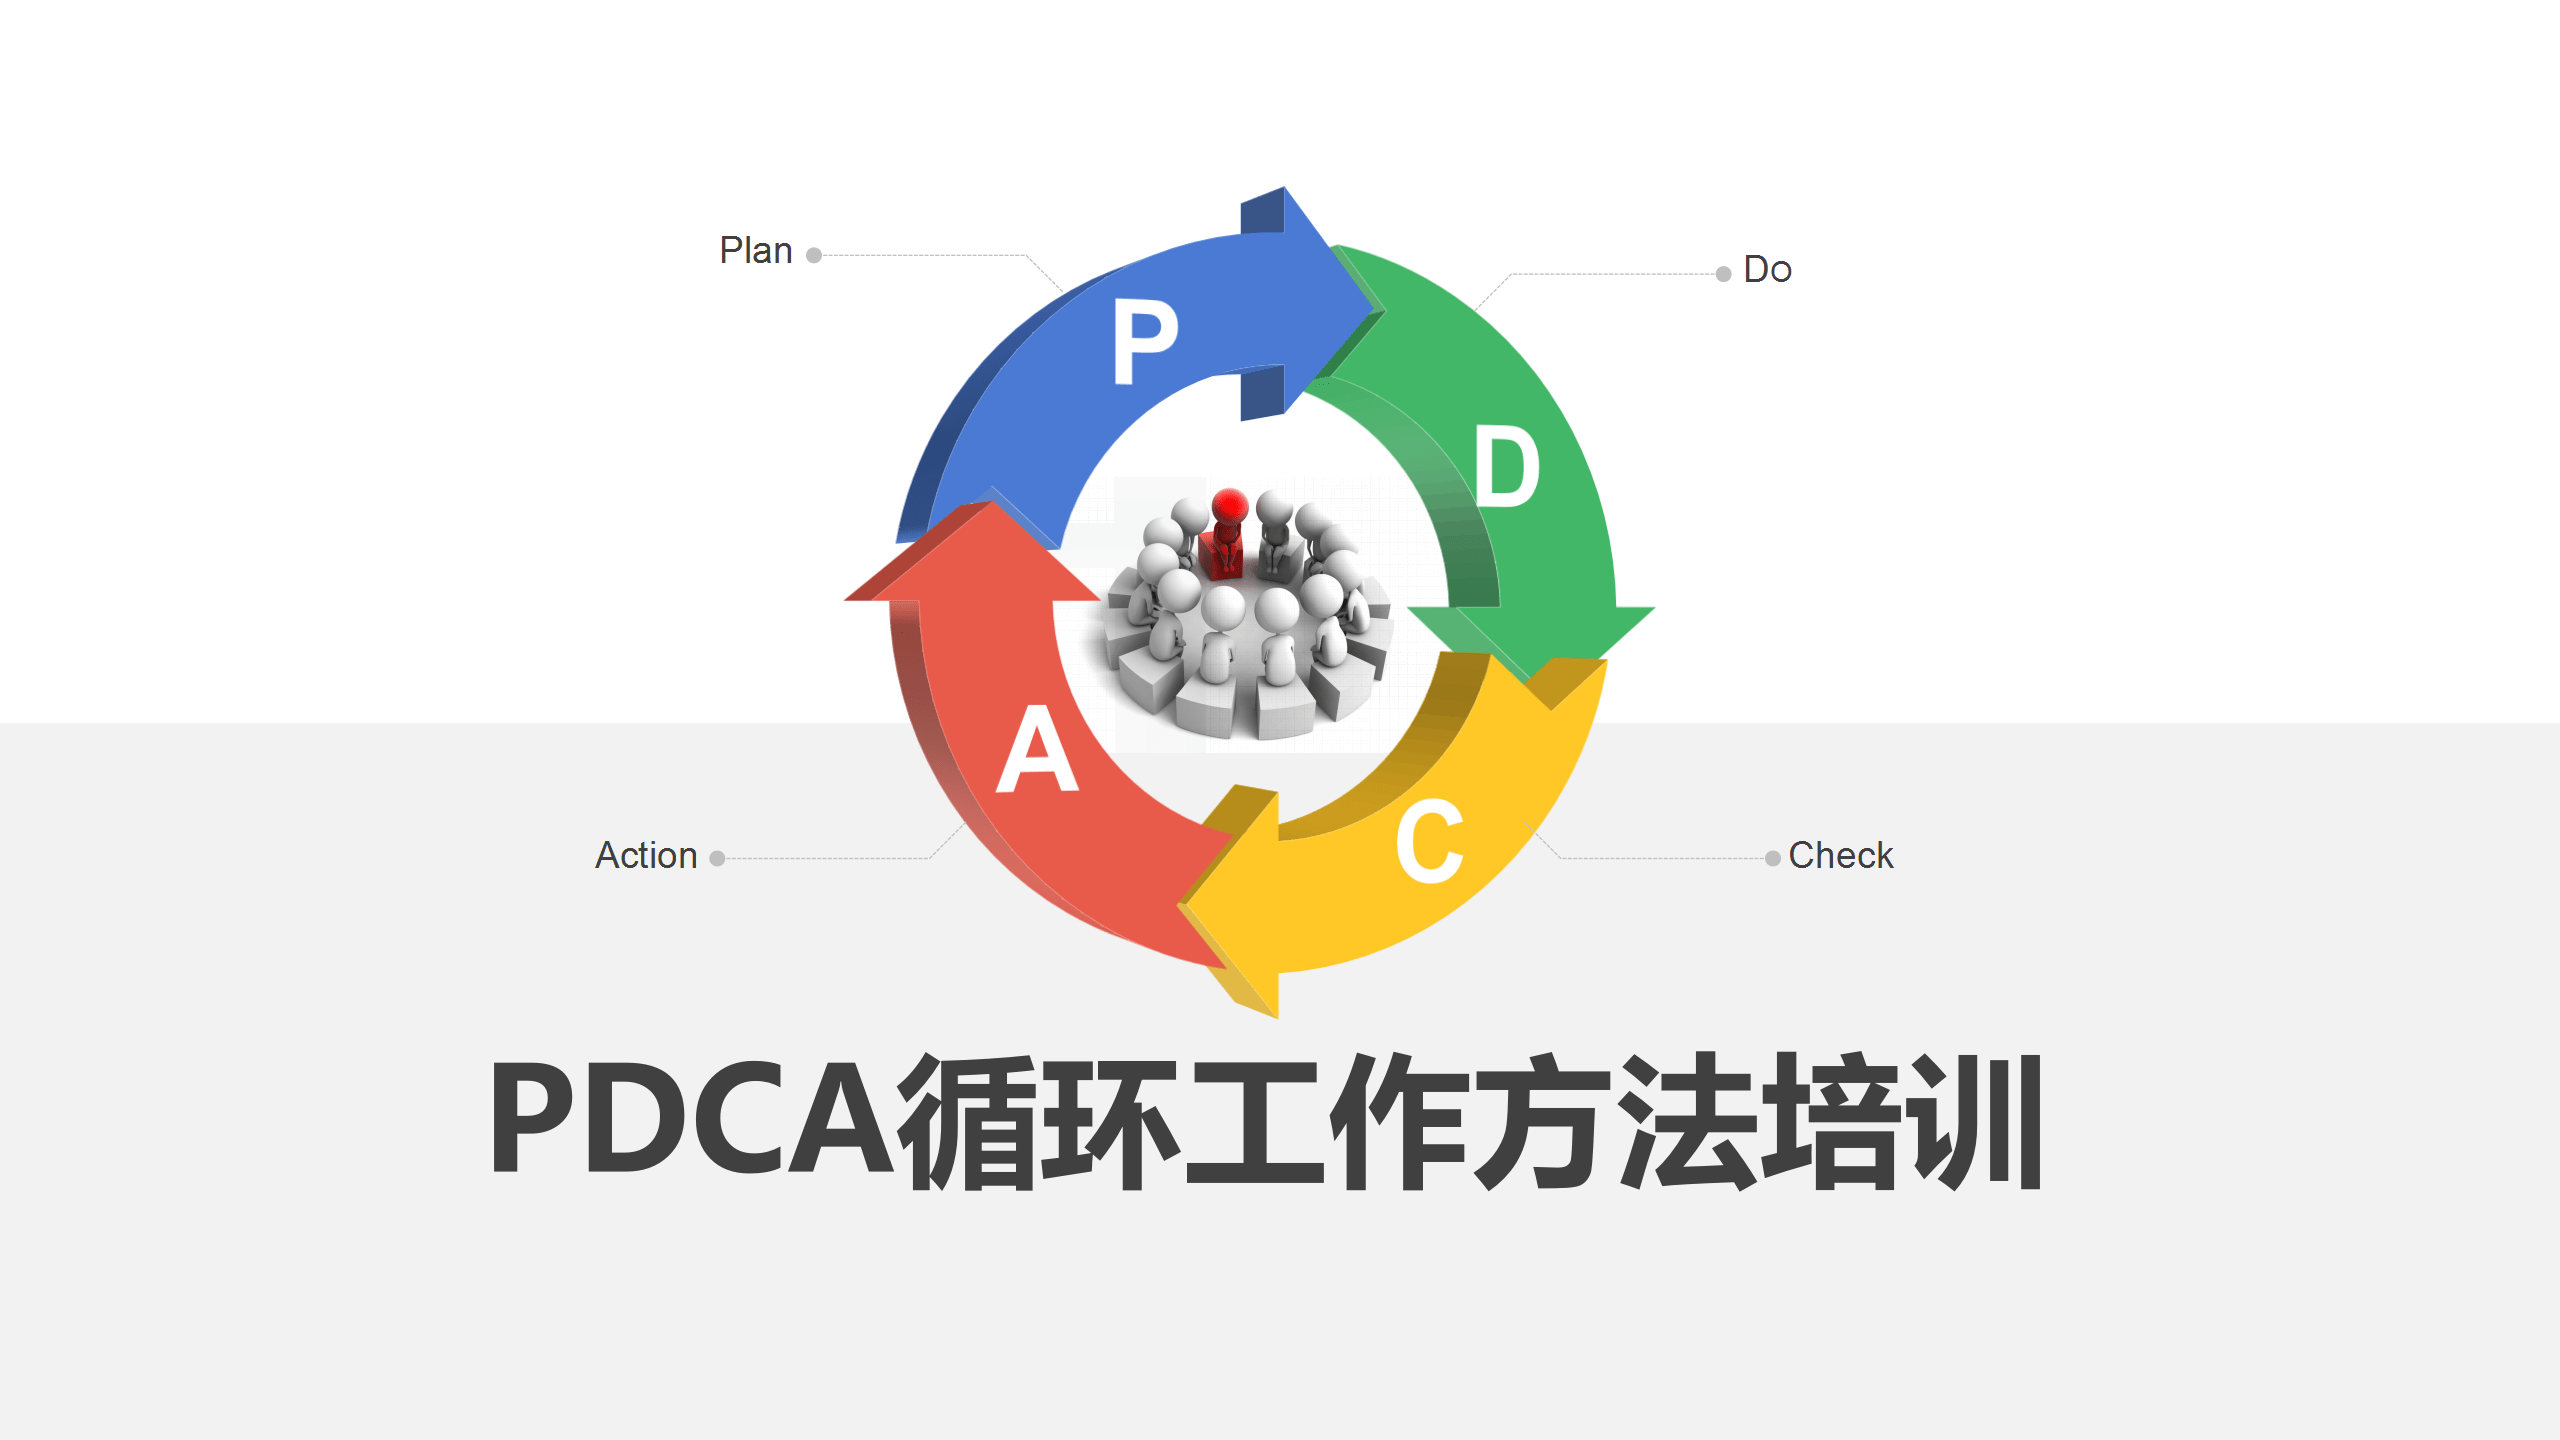 pdca工作循环法从分析说明到循环步骤完整一套培训干货